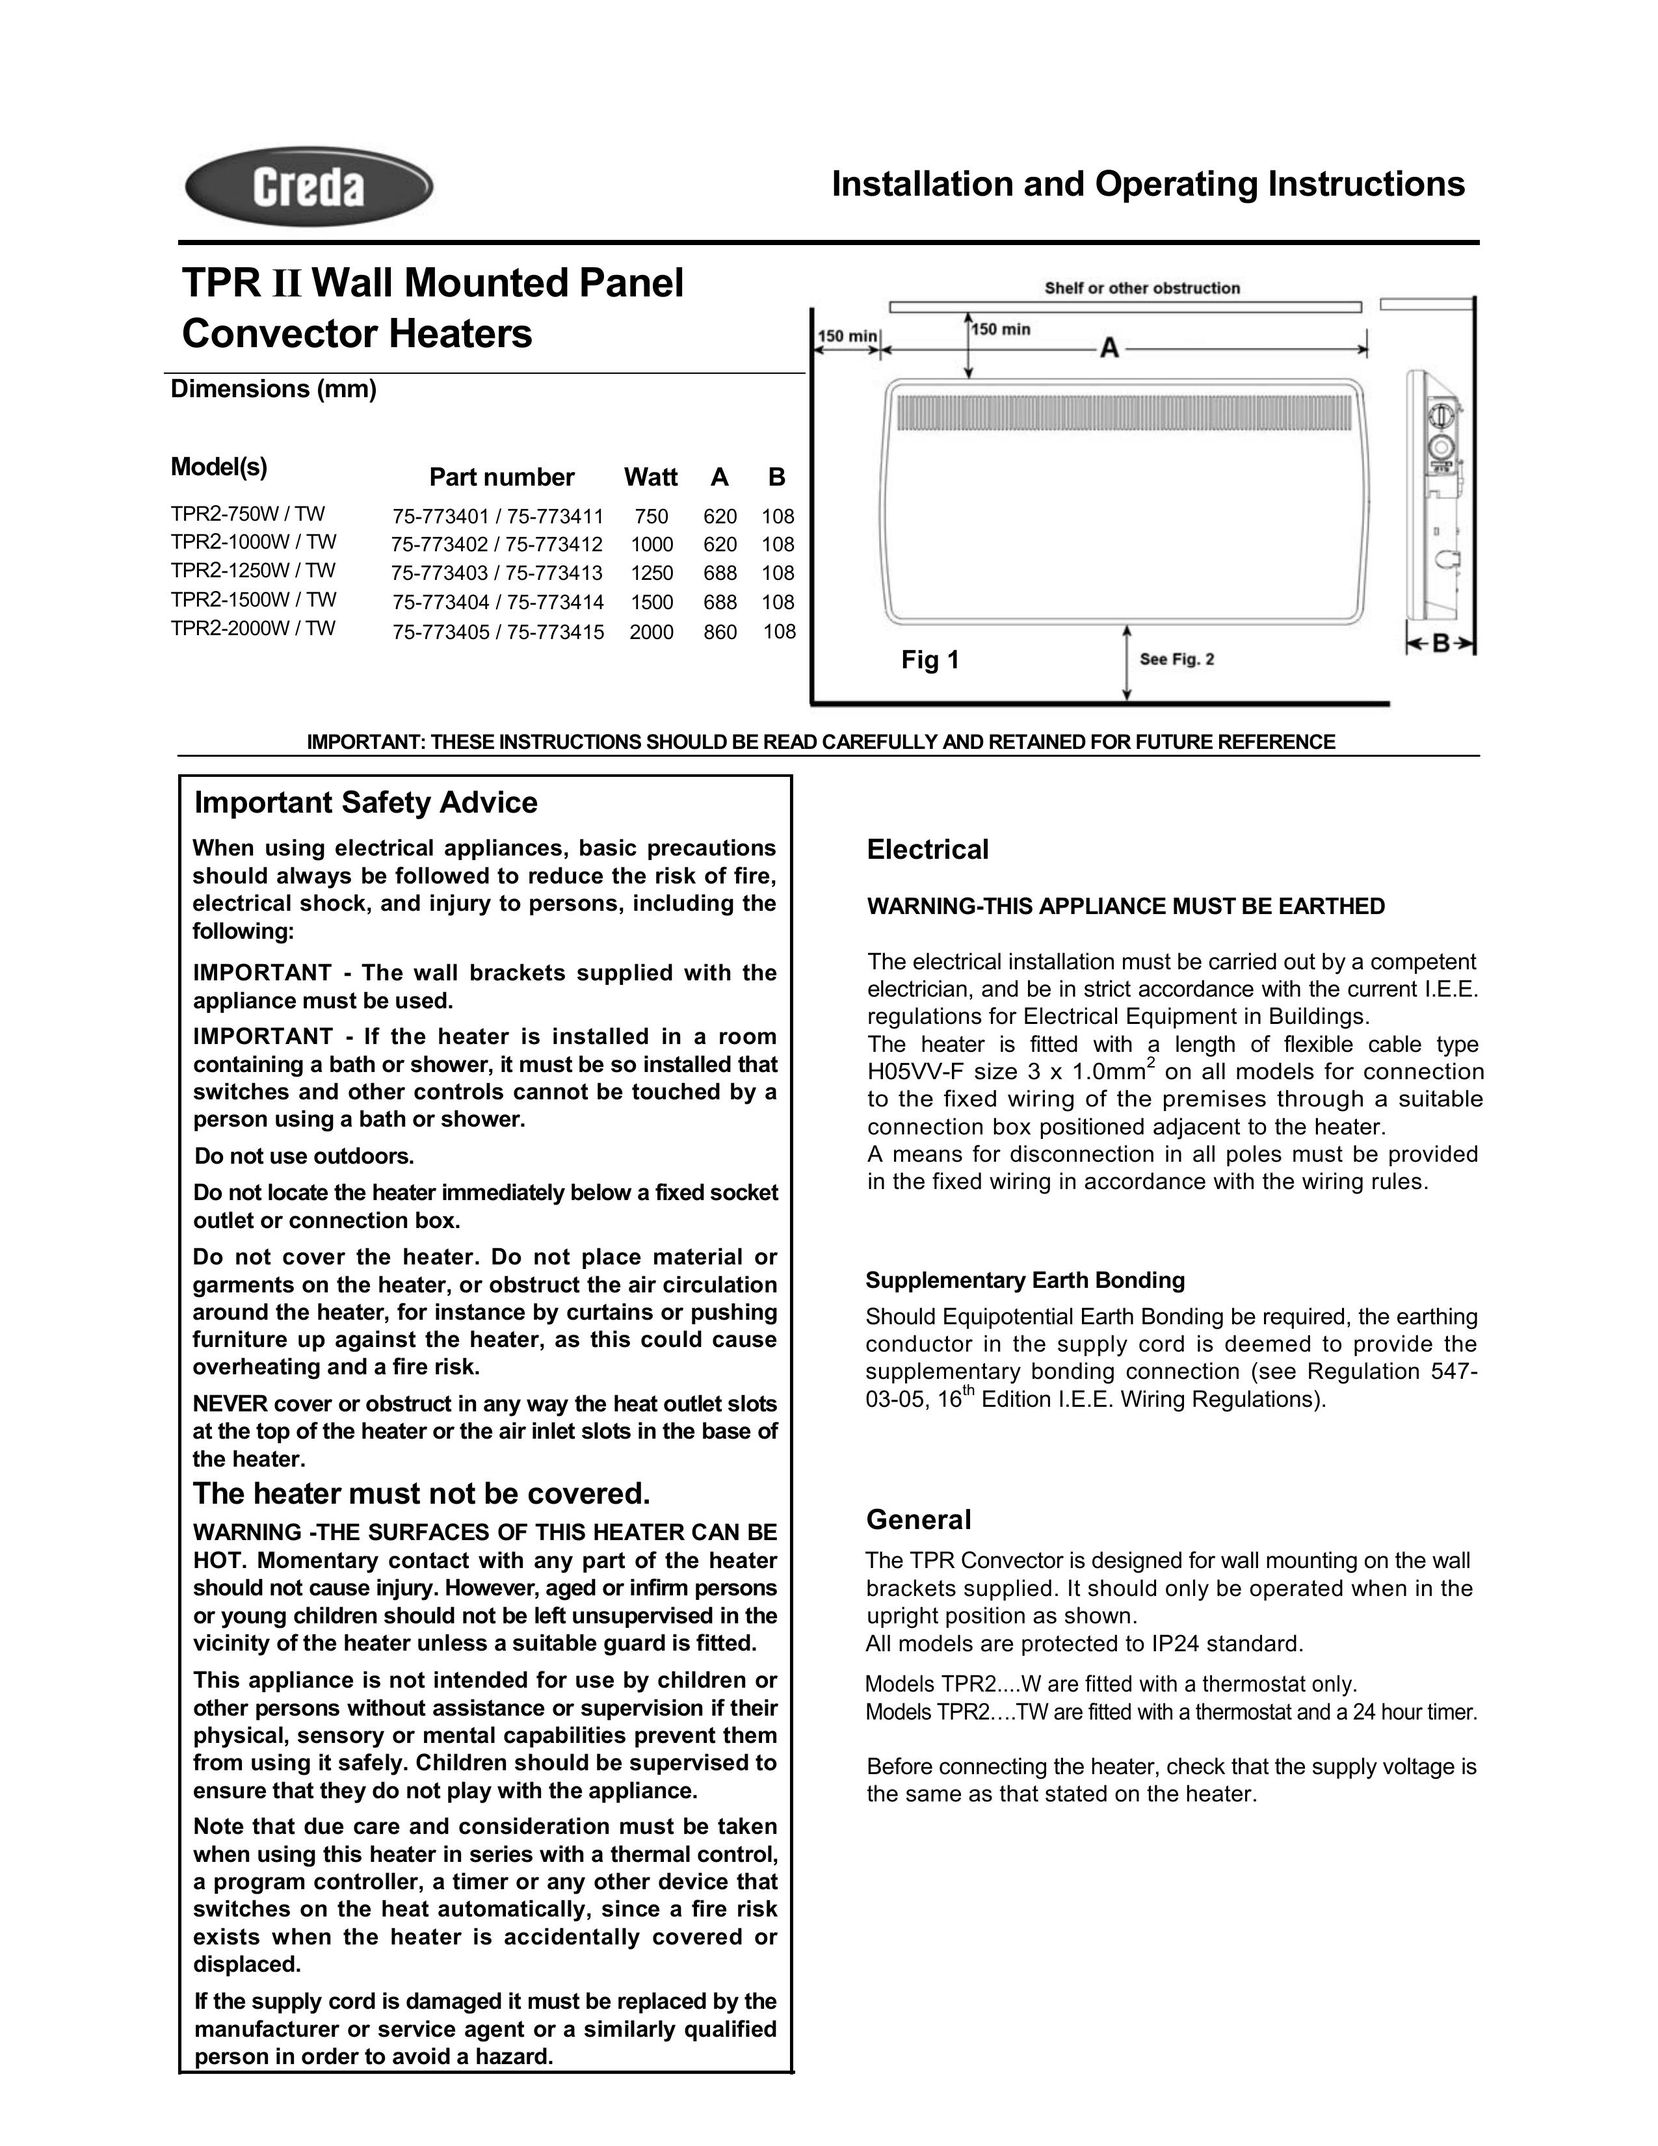 Creda TPR2-2000W Electric Heater User Manual